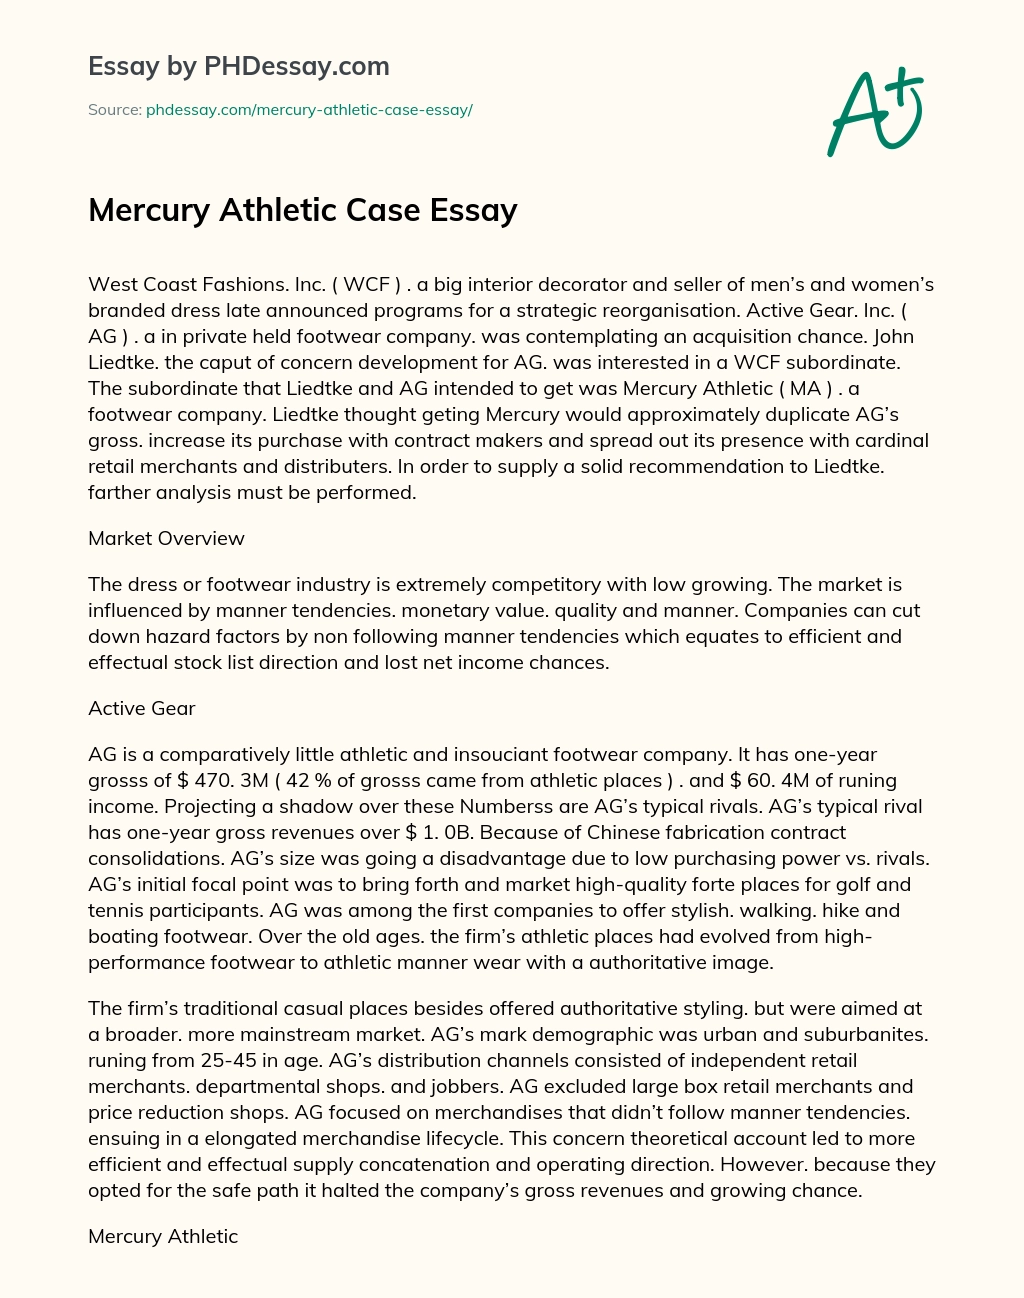 Mercury Athletic Case Essay essay